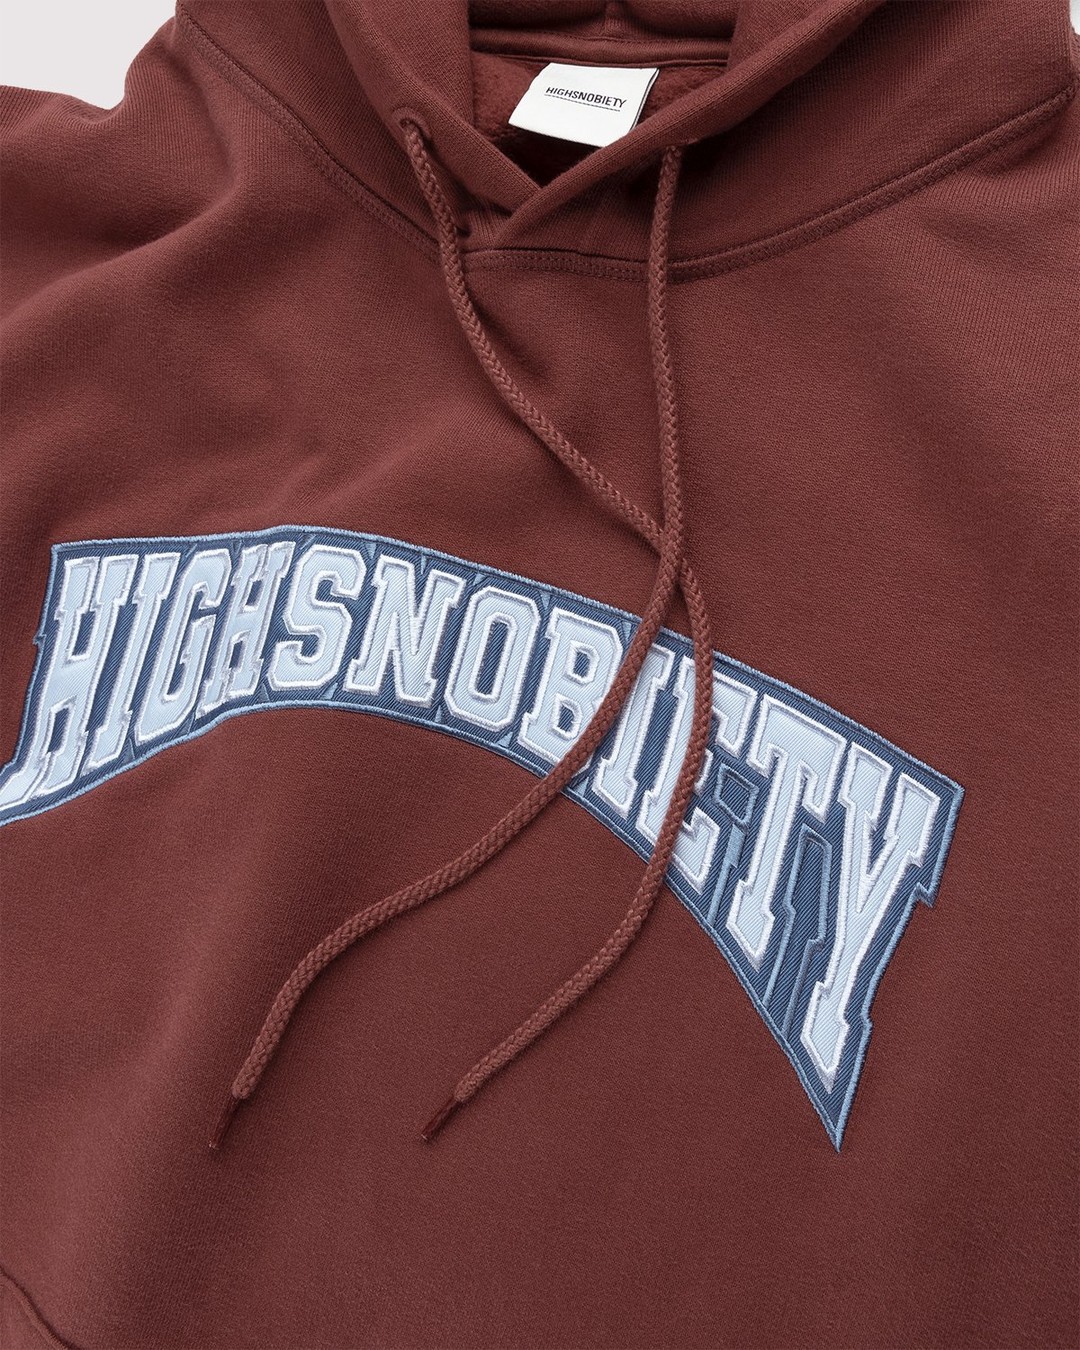 Highsnobiety – Collegiate Hoodie Brown - Sweats - Brown - Image 5